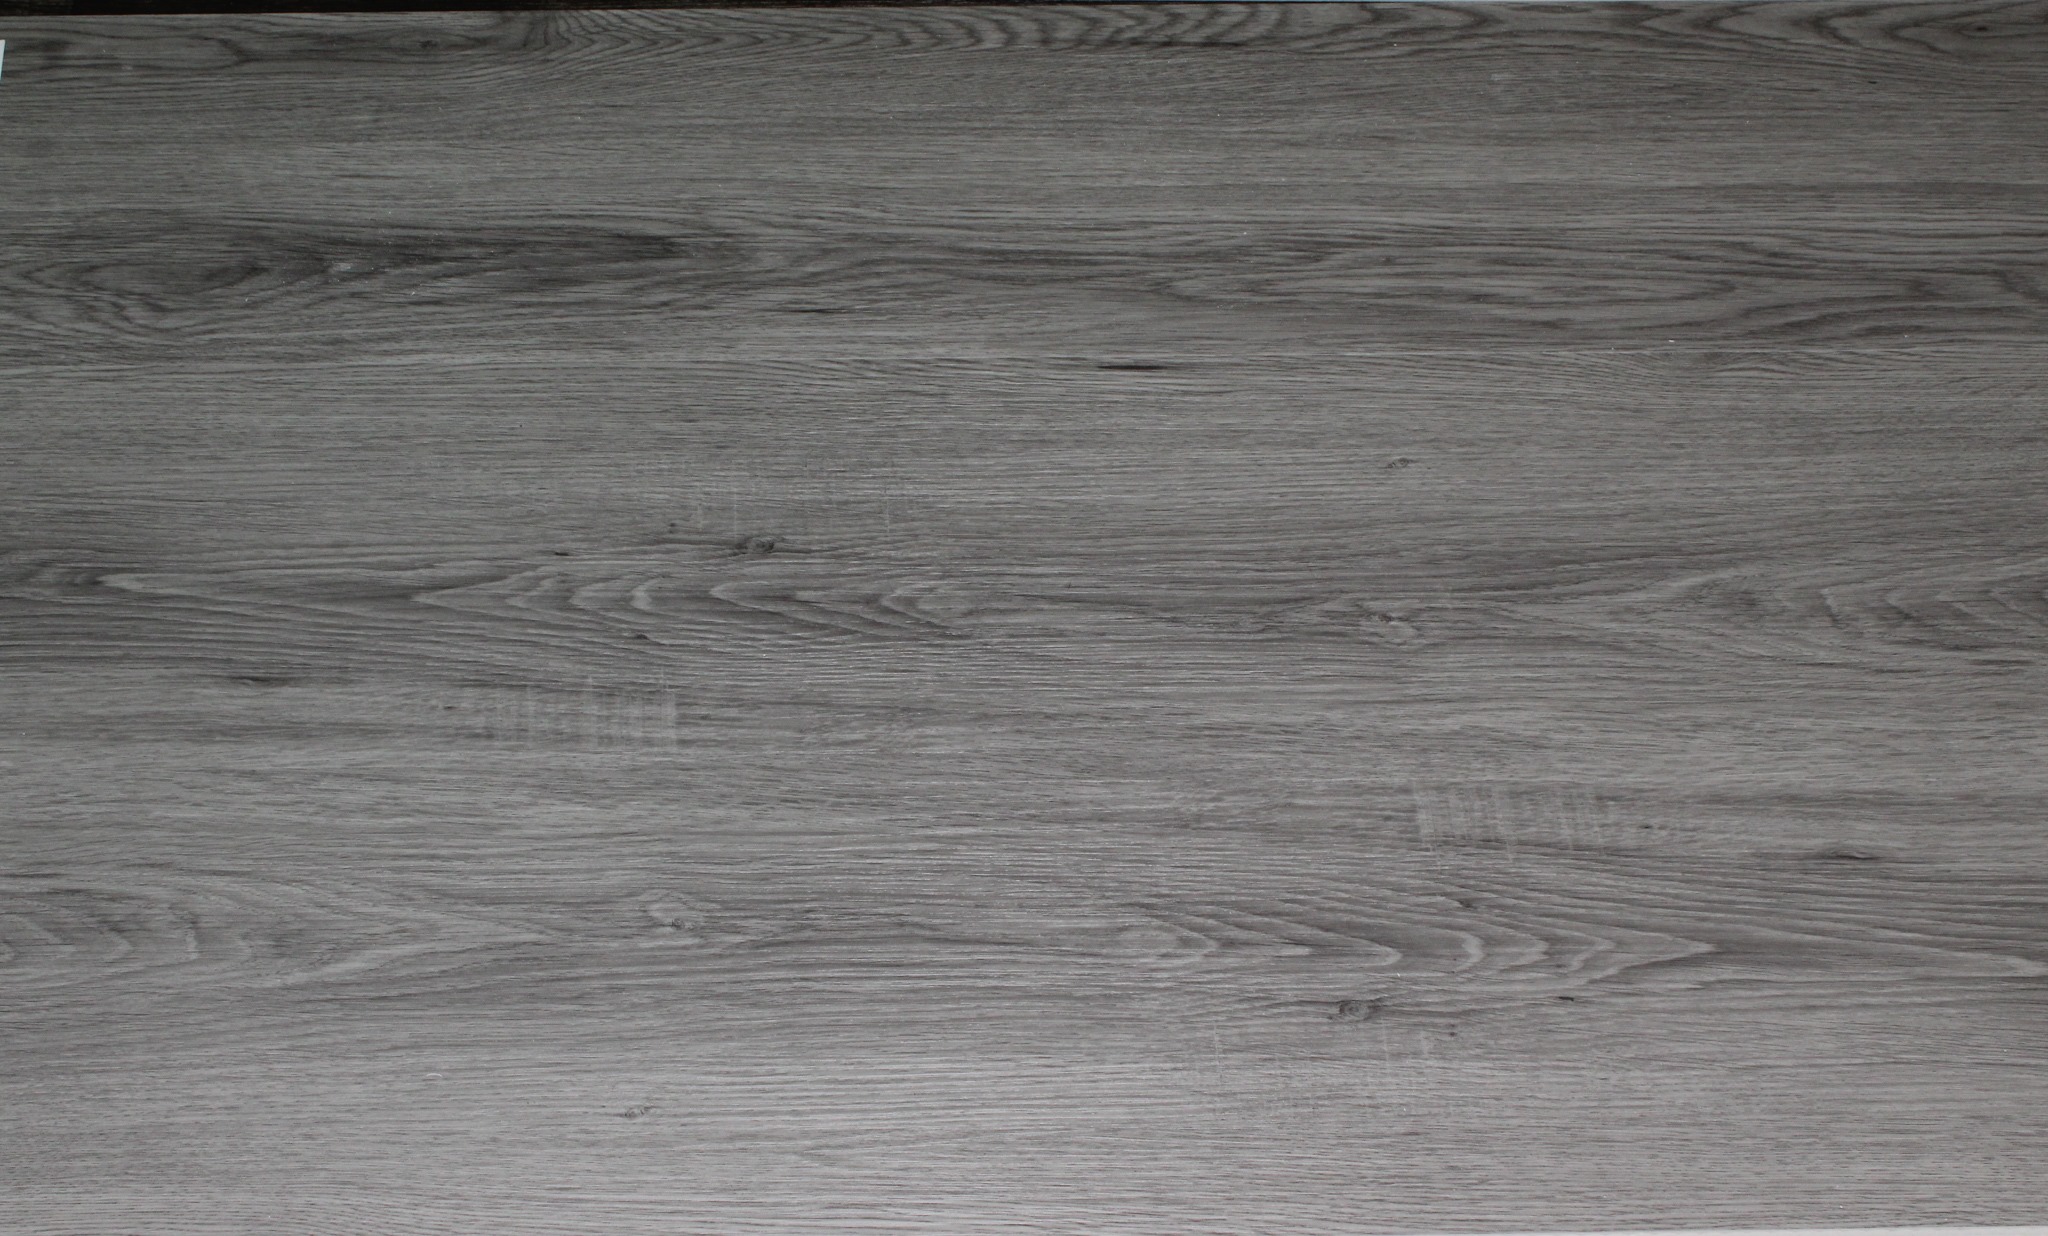 grey lvp flooring